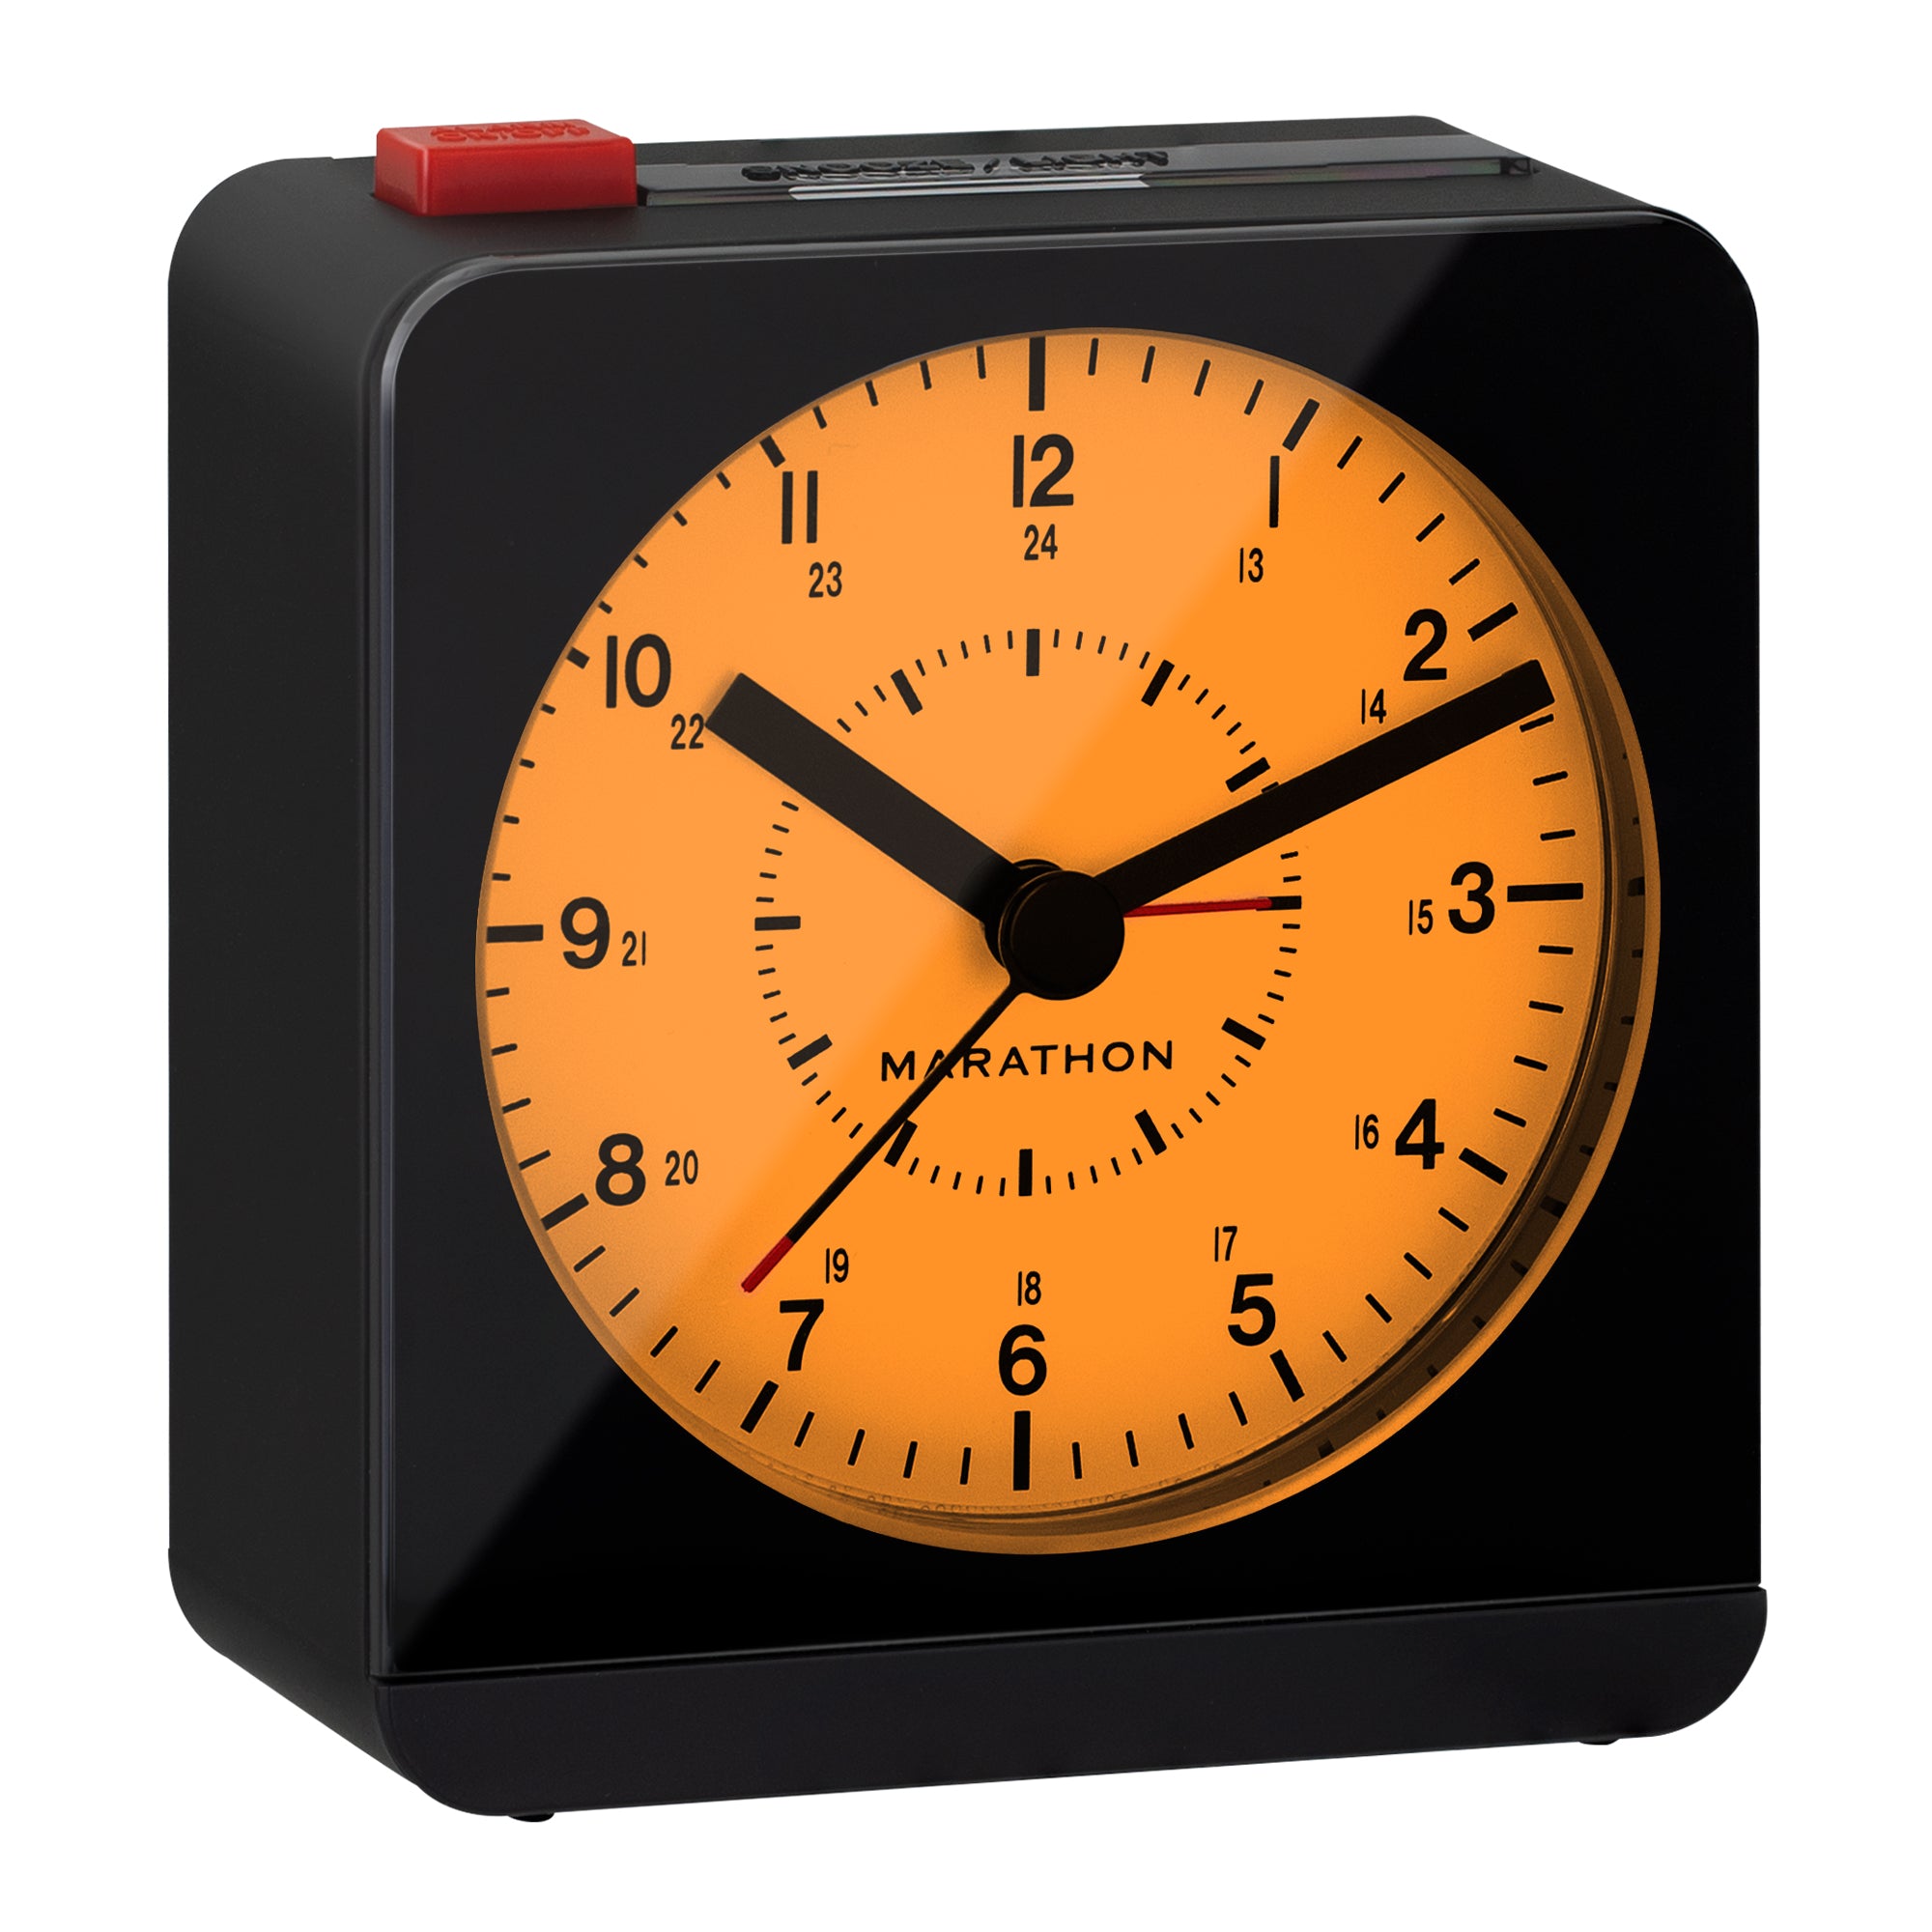 Reloj-despertador Analógico Timemark Plateado (9 X 13,5 X 5,5 Cm